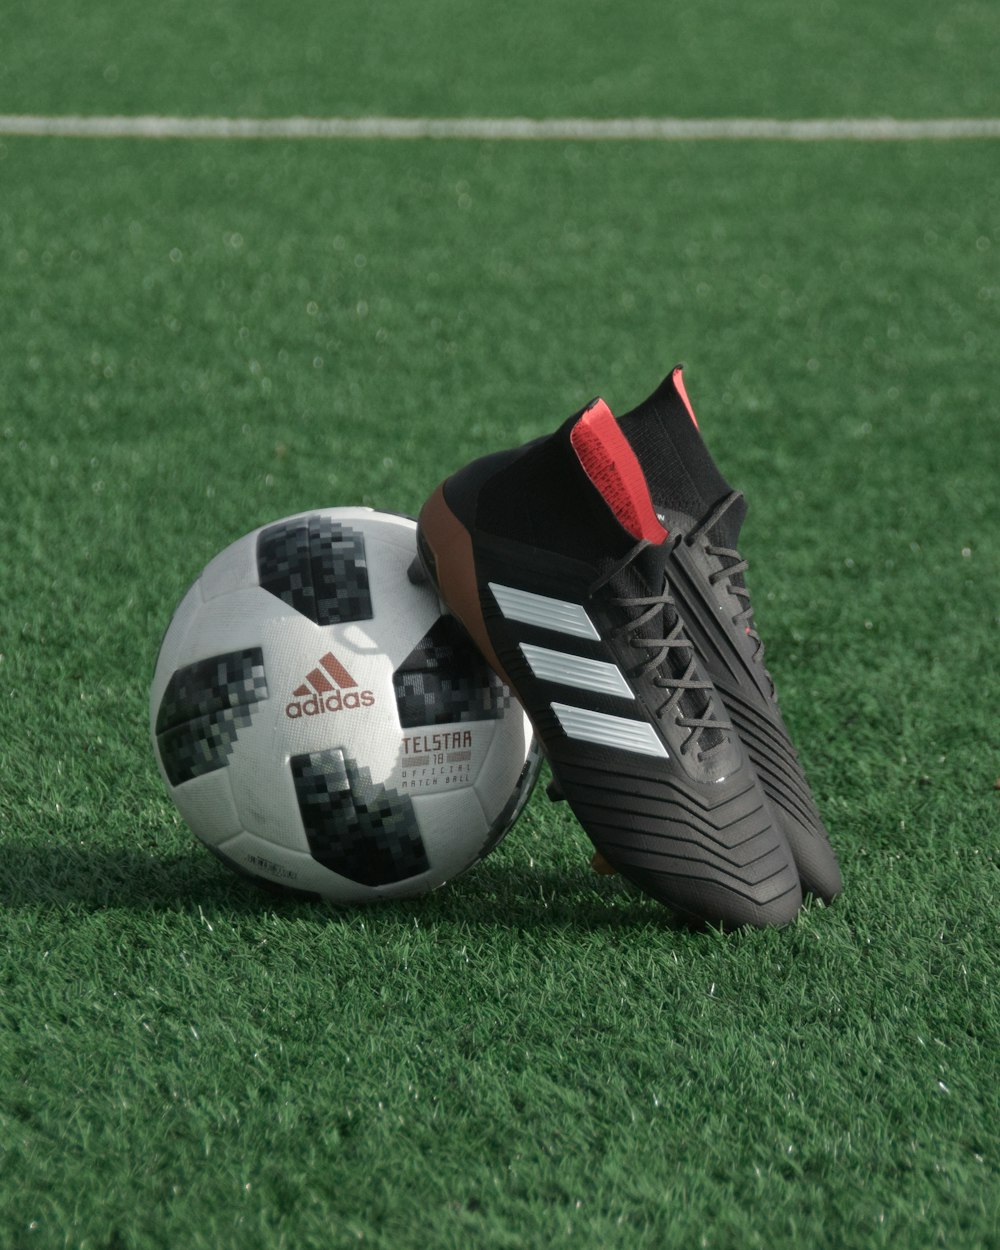 Foto tacos adidas negros apoyarse en blanco y negro balón de fútbol adidas  en la hierba verde – Imagen Fútbol gratis en Unsplash